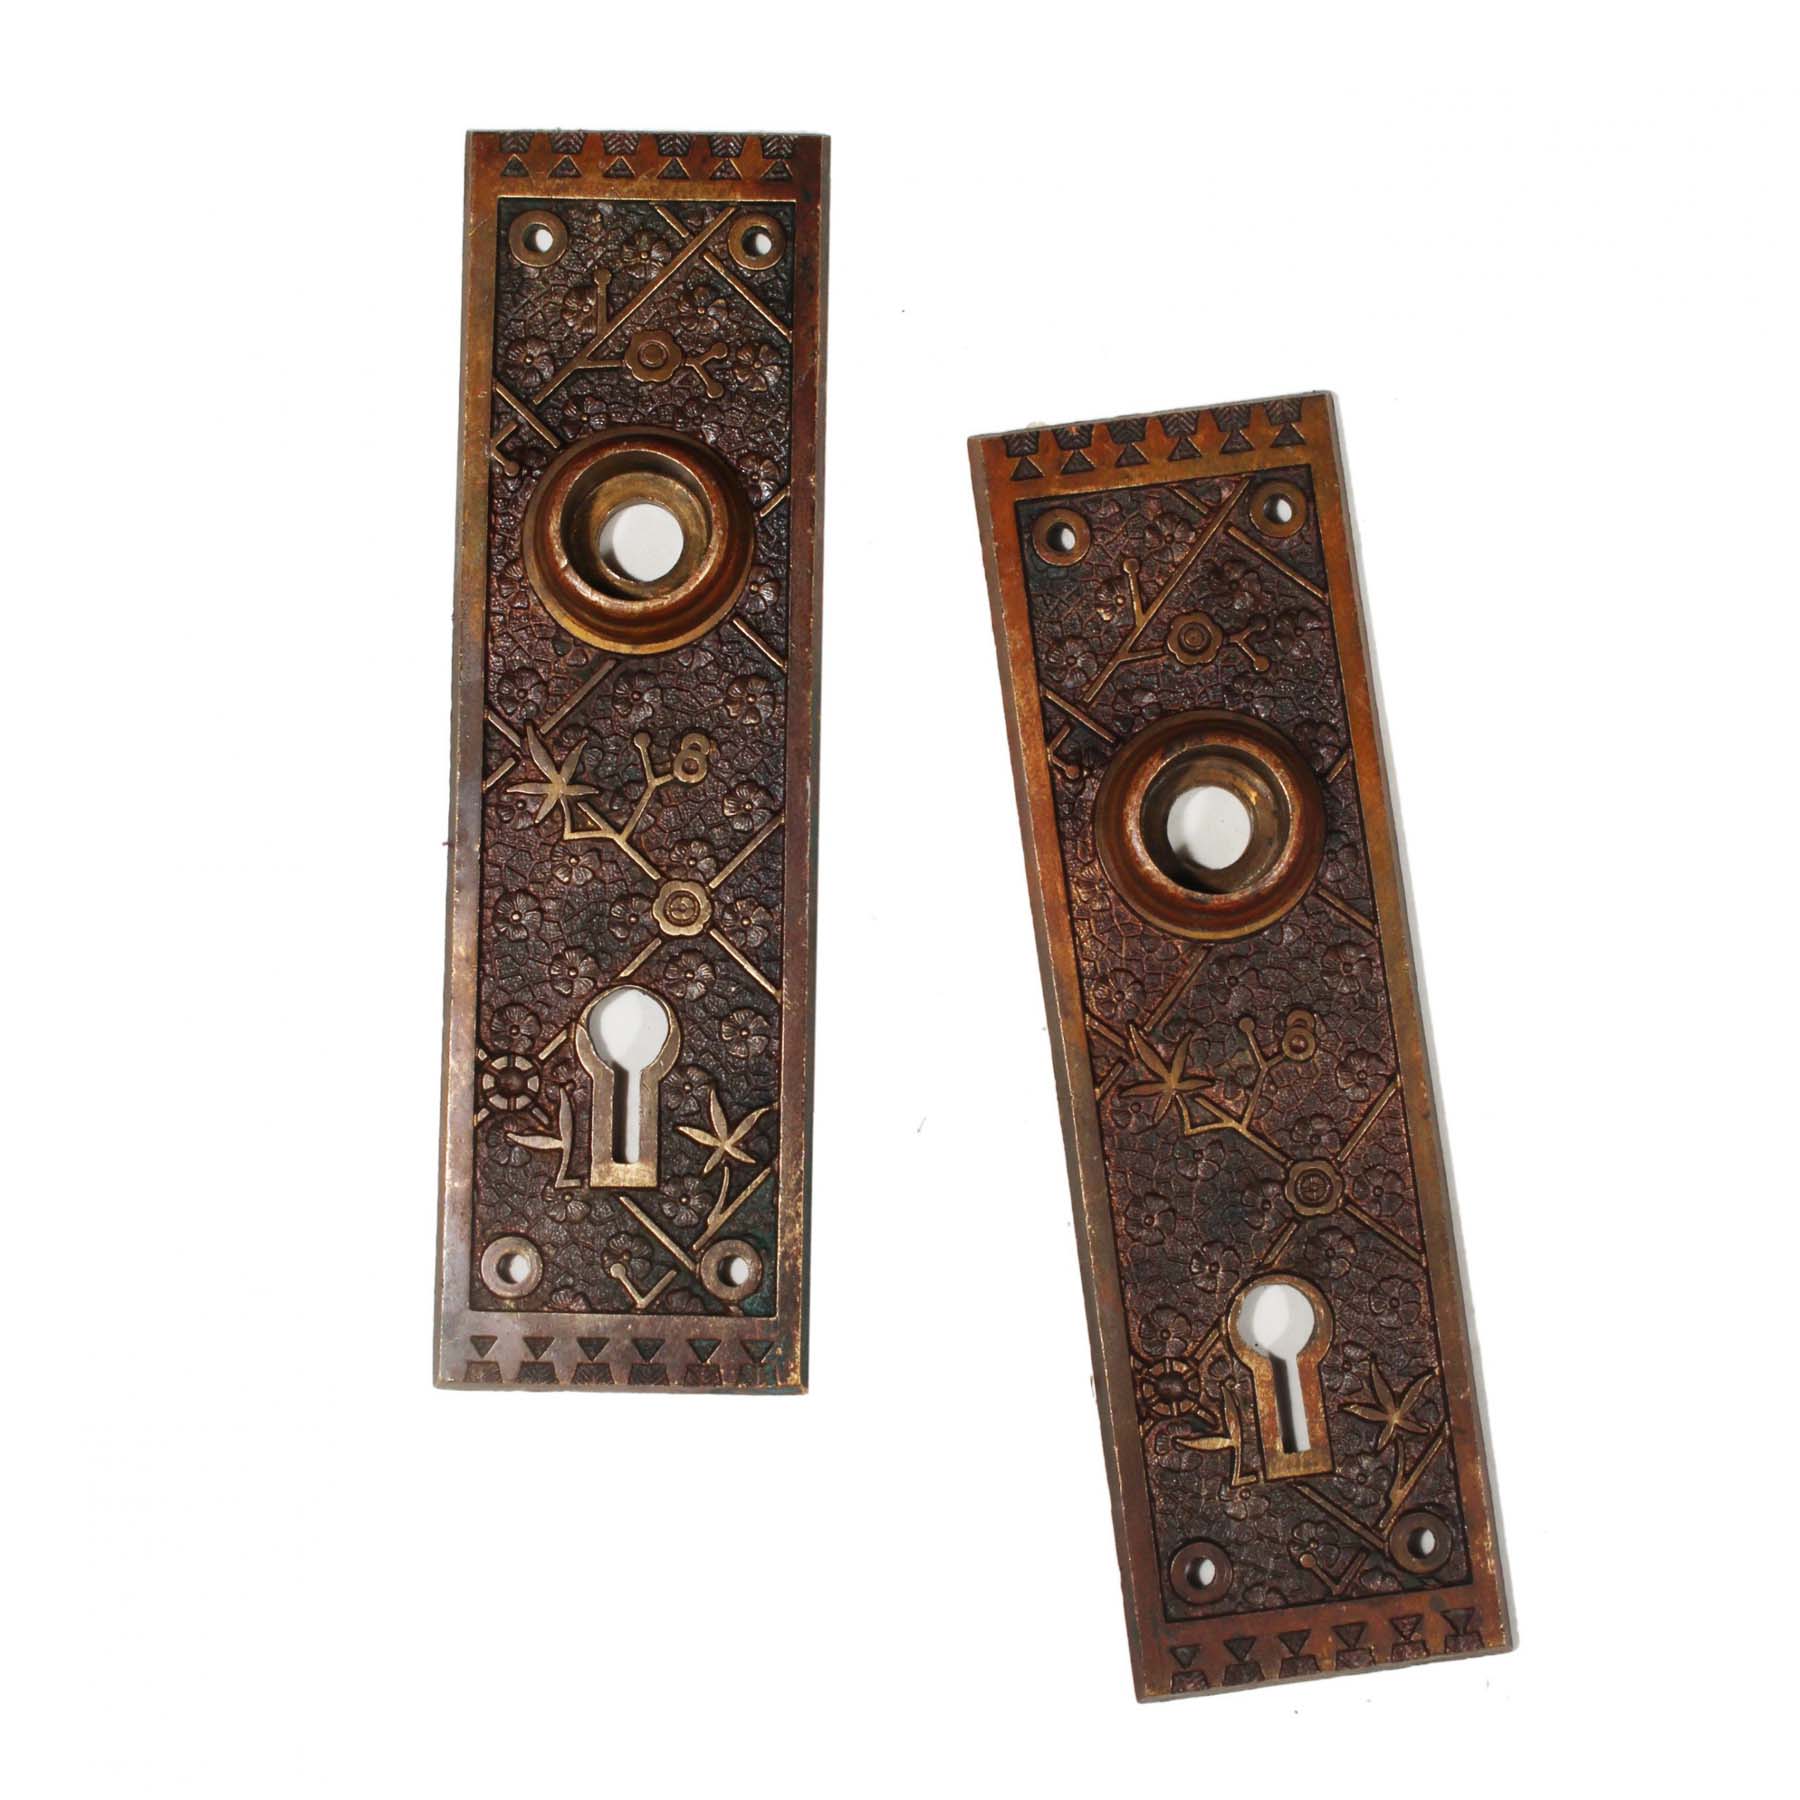 SOLD Antique Eastlake Door Hardware Set “Ekado” by Sargent-69723